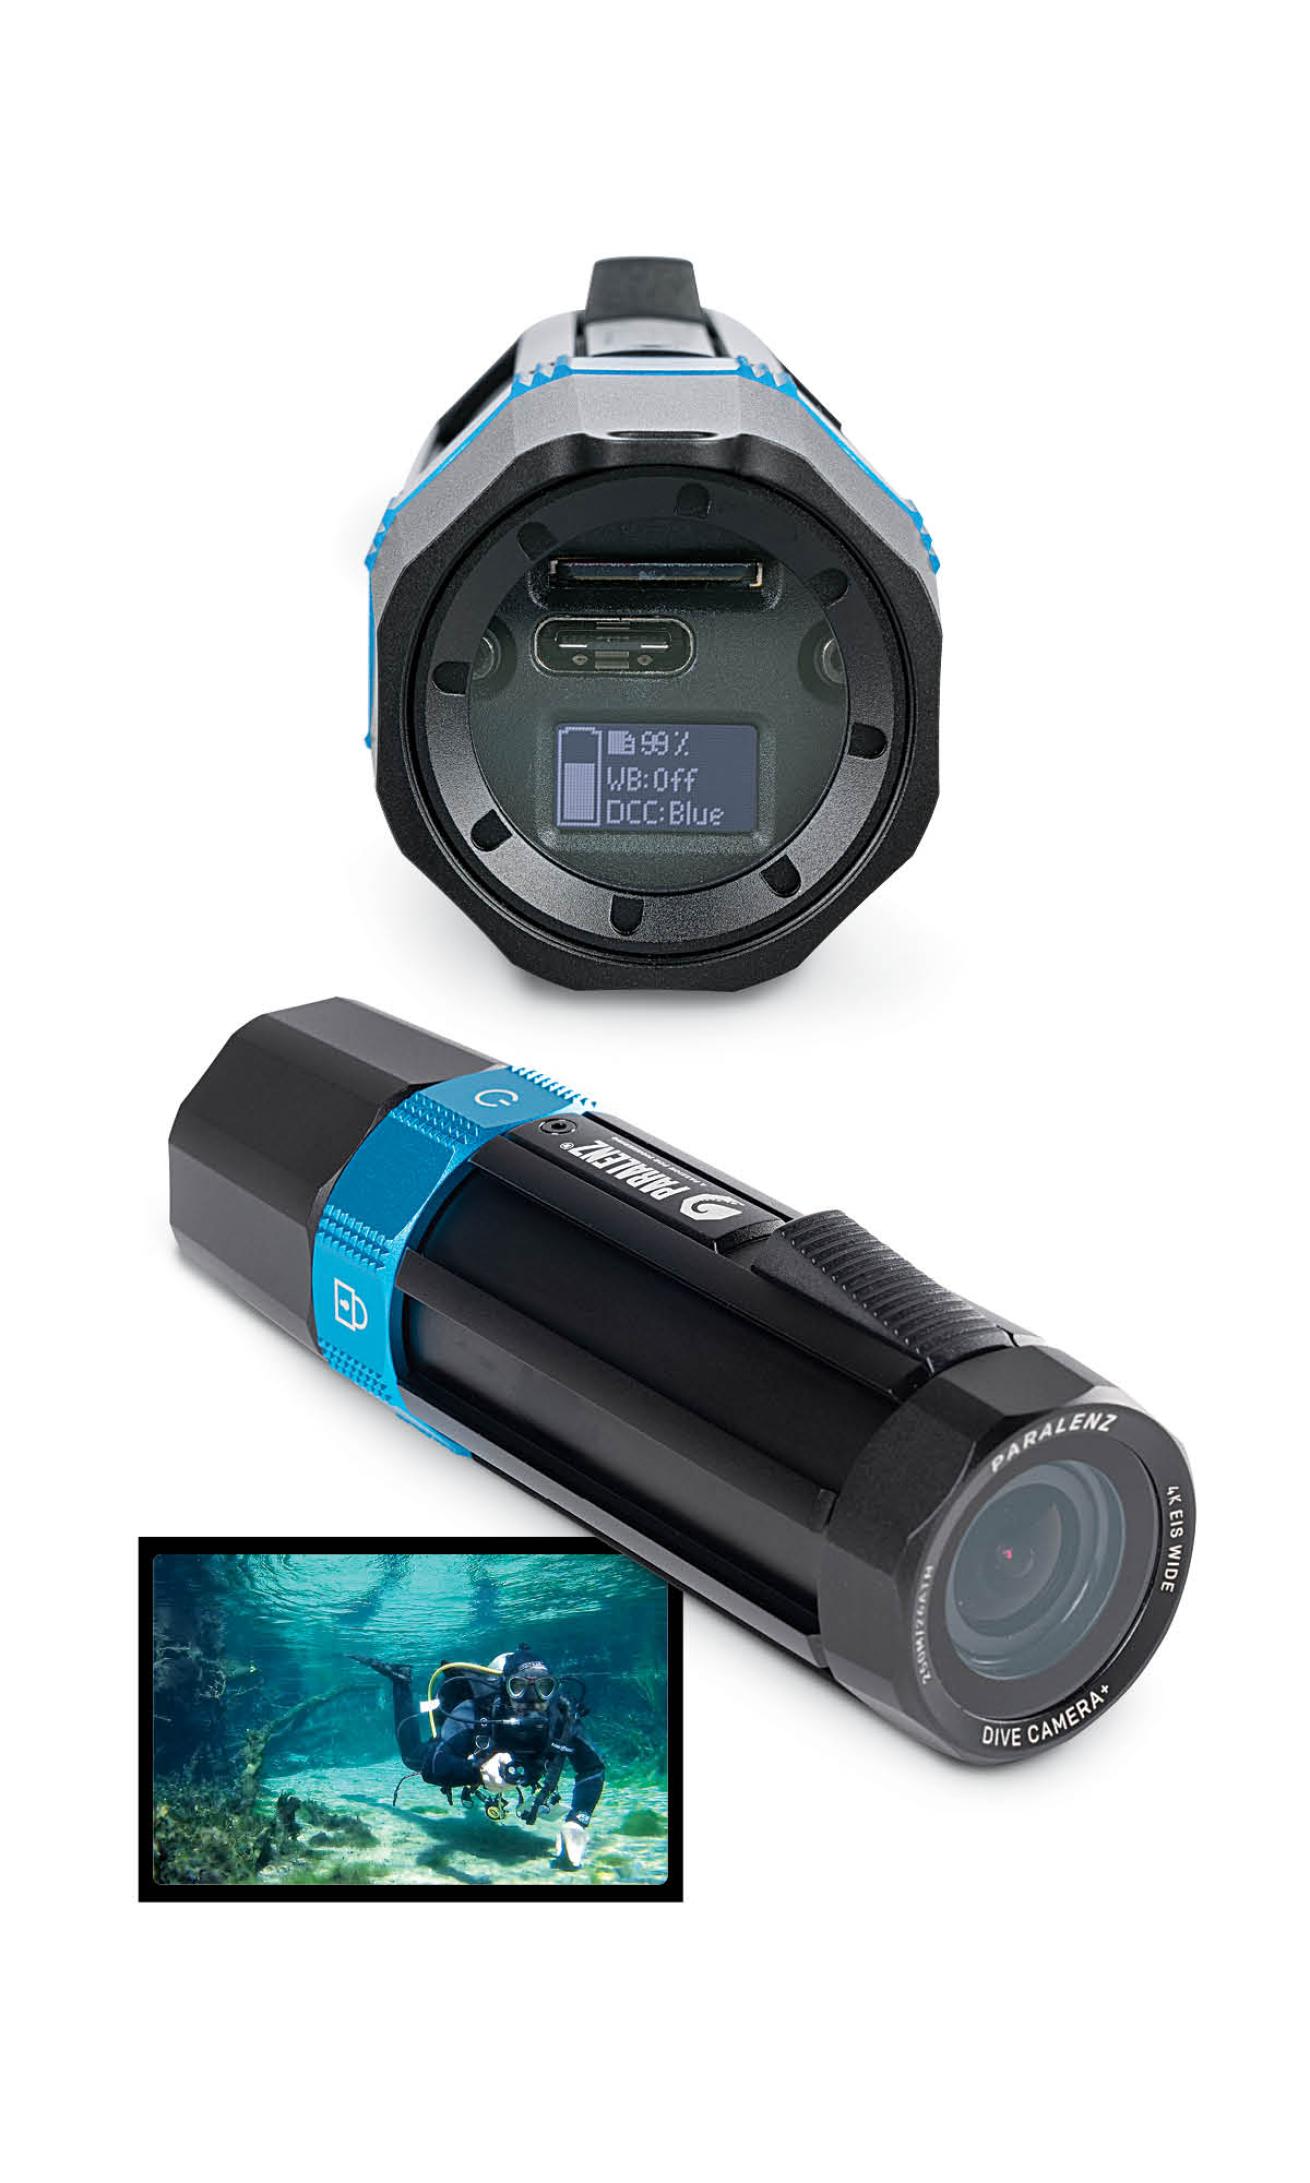 Paralenz underwater camera